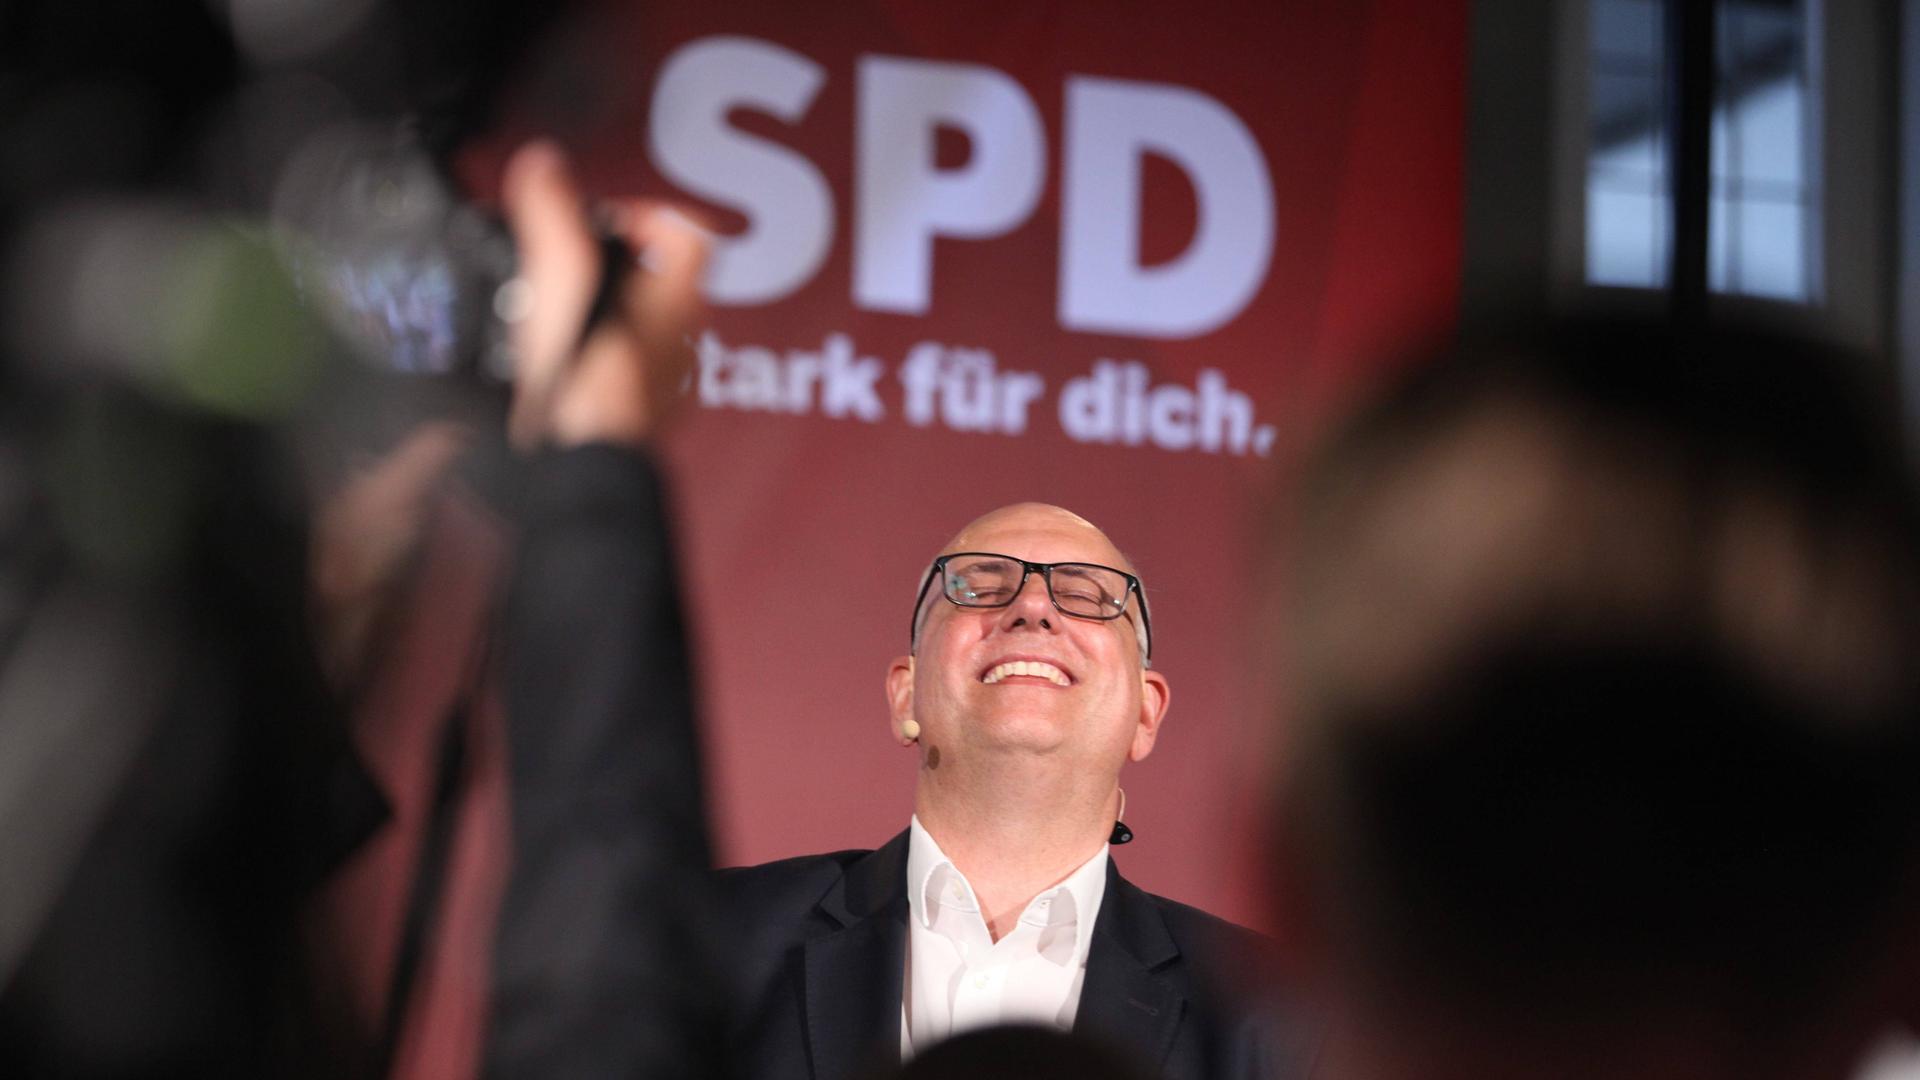 Spitzenkandidat und bisheriger Bürgermeister Andreas Bovenschulte am Abend der Bürgerschaftswahl in der Bremer Bürgerschaft.